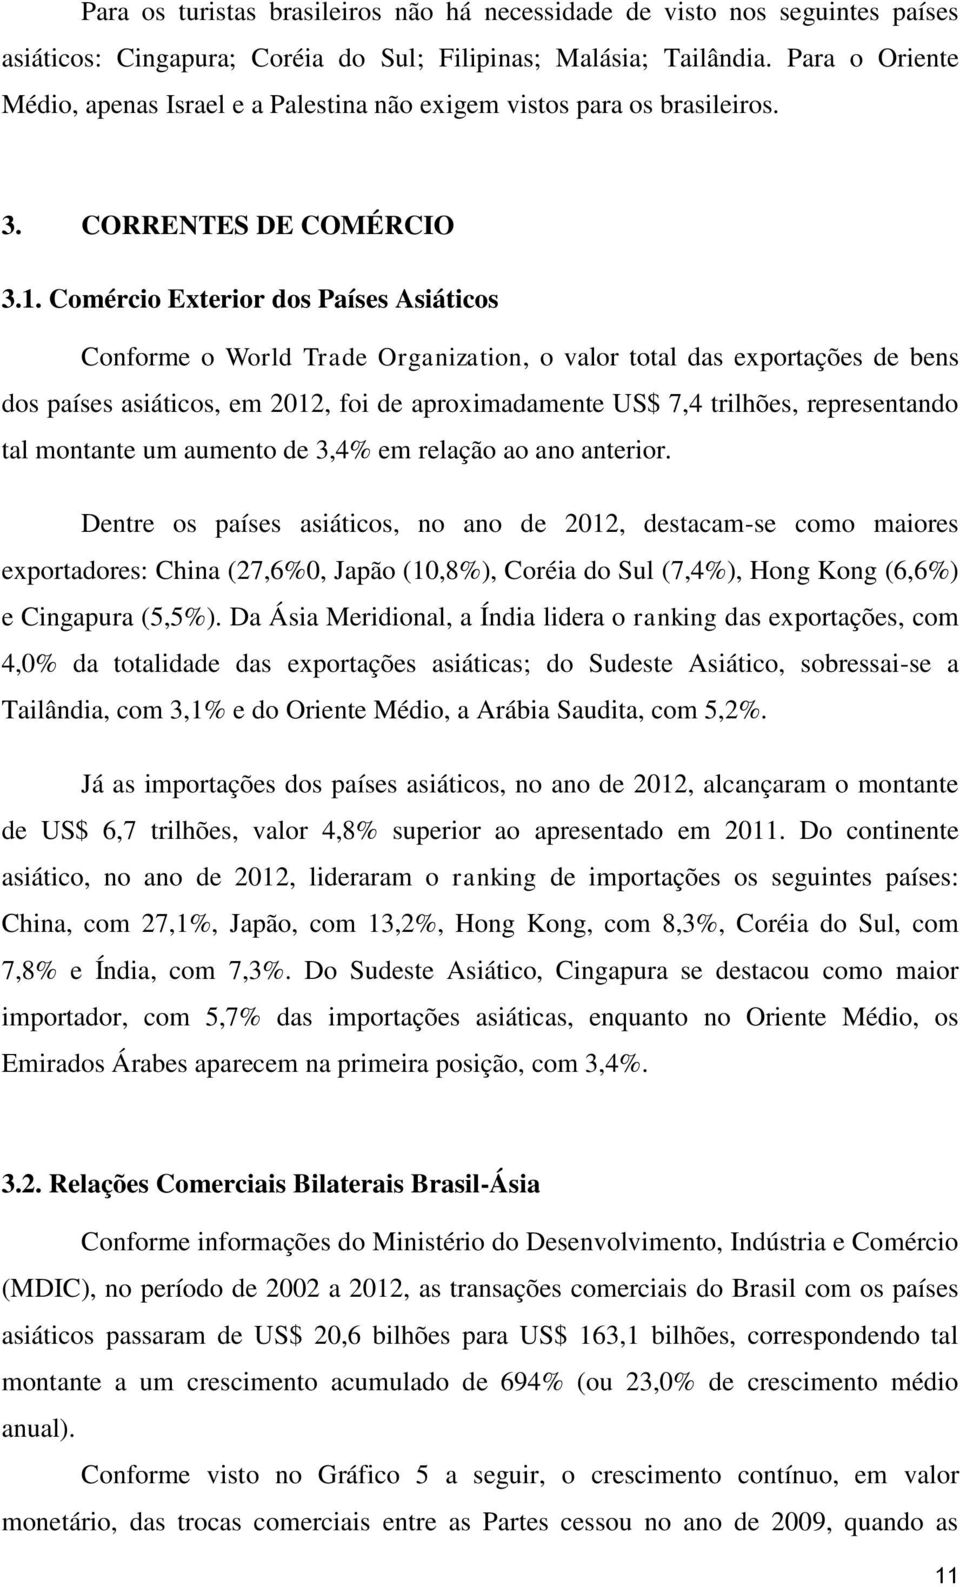 Comércio Exterior dos Países Asiáticos Conforme o World Trade Organization, o valor total das exportações de bens dos países asiáticos, em 2012, foi de aproximadamente US$ 7,4 trilhões, representando